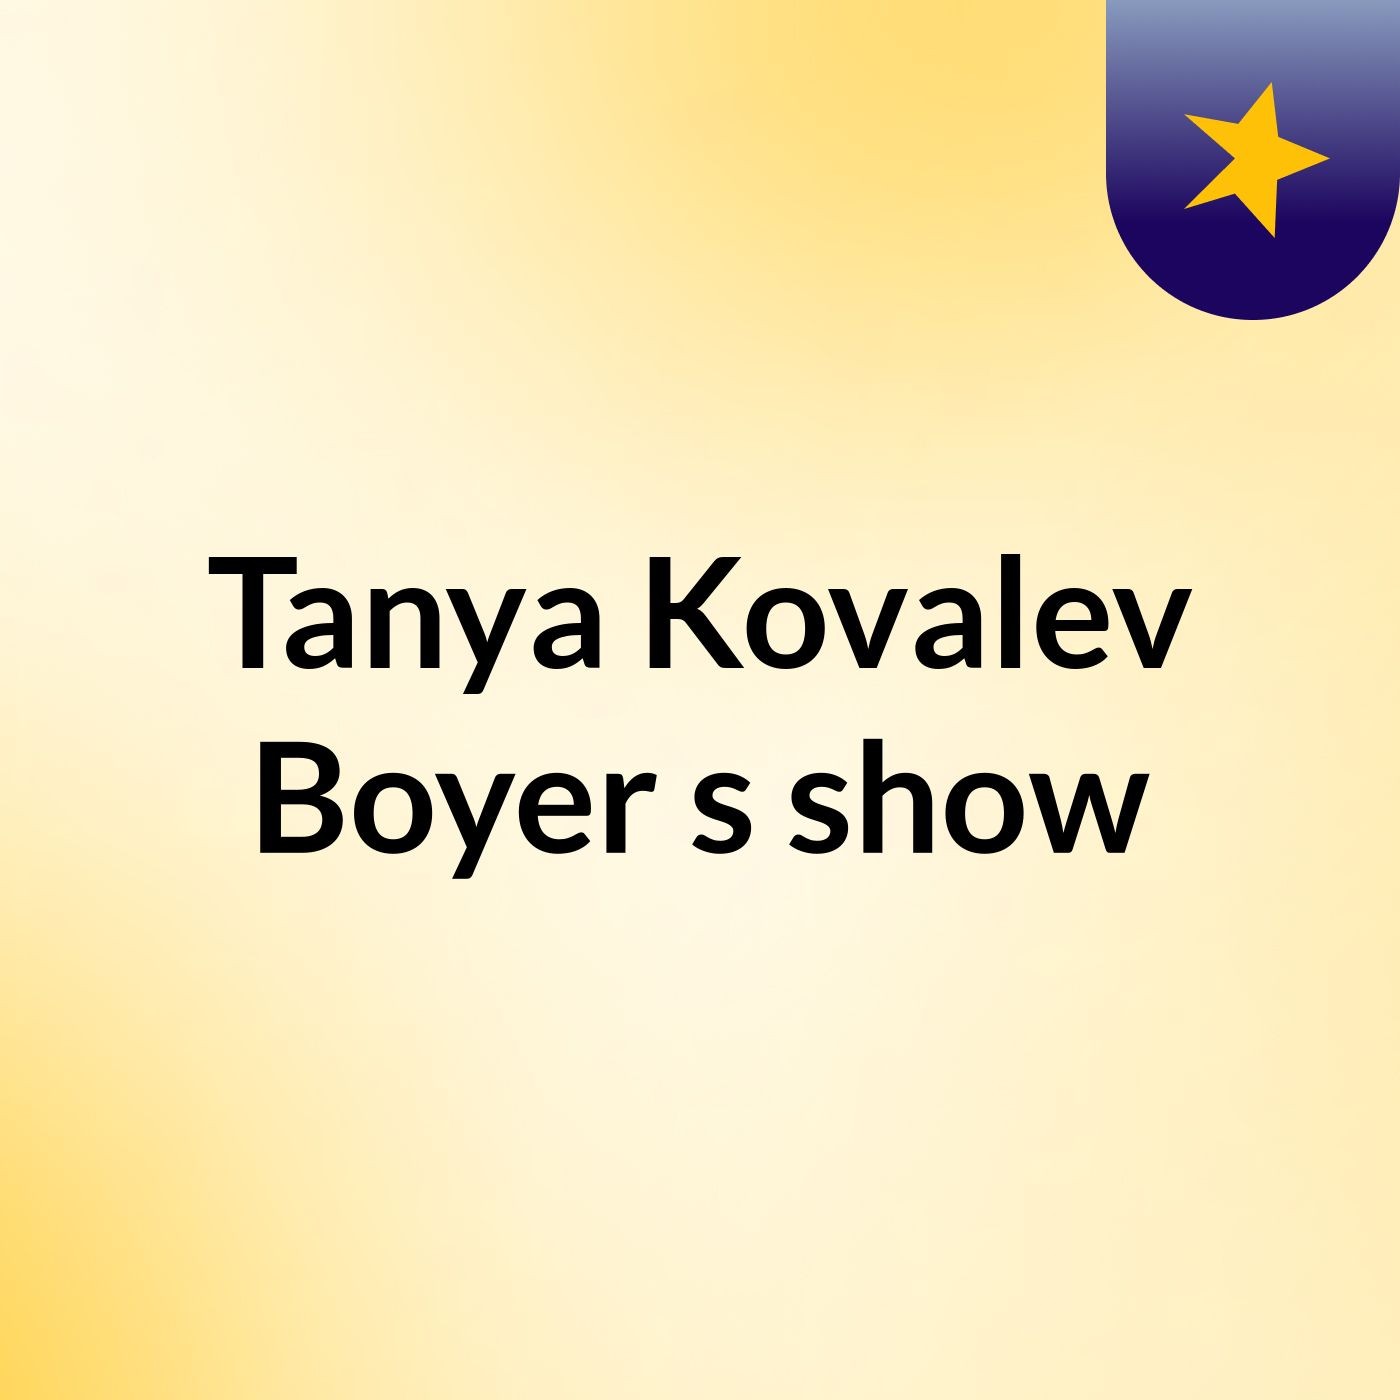 Tanya Kovalev Boyer's show